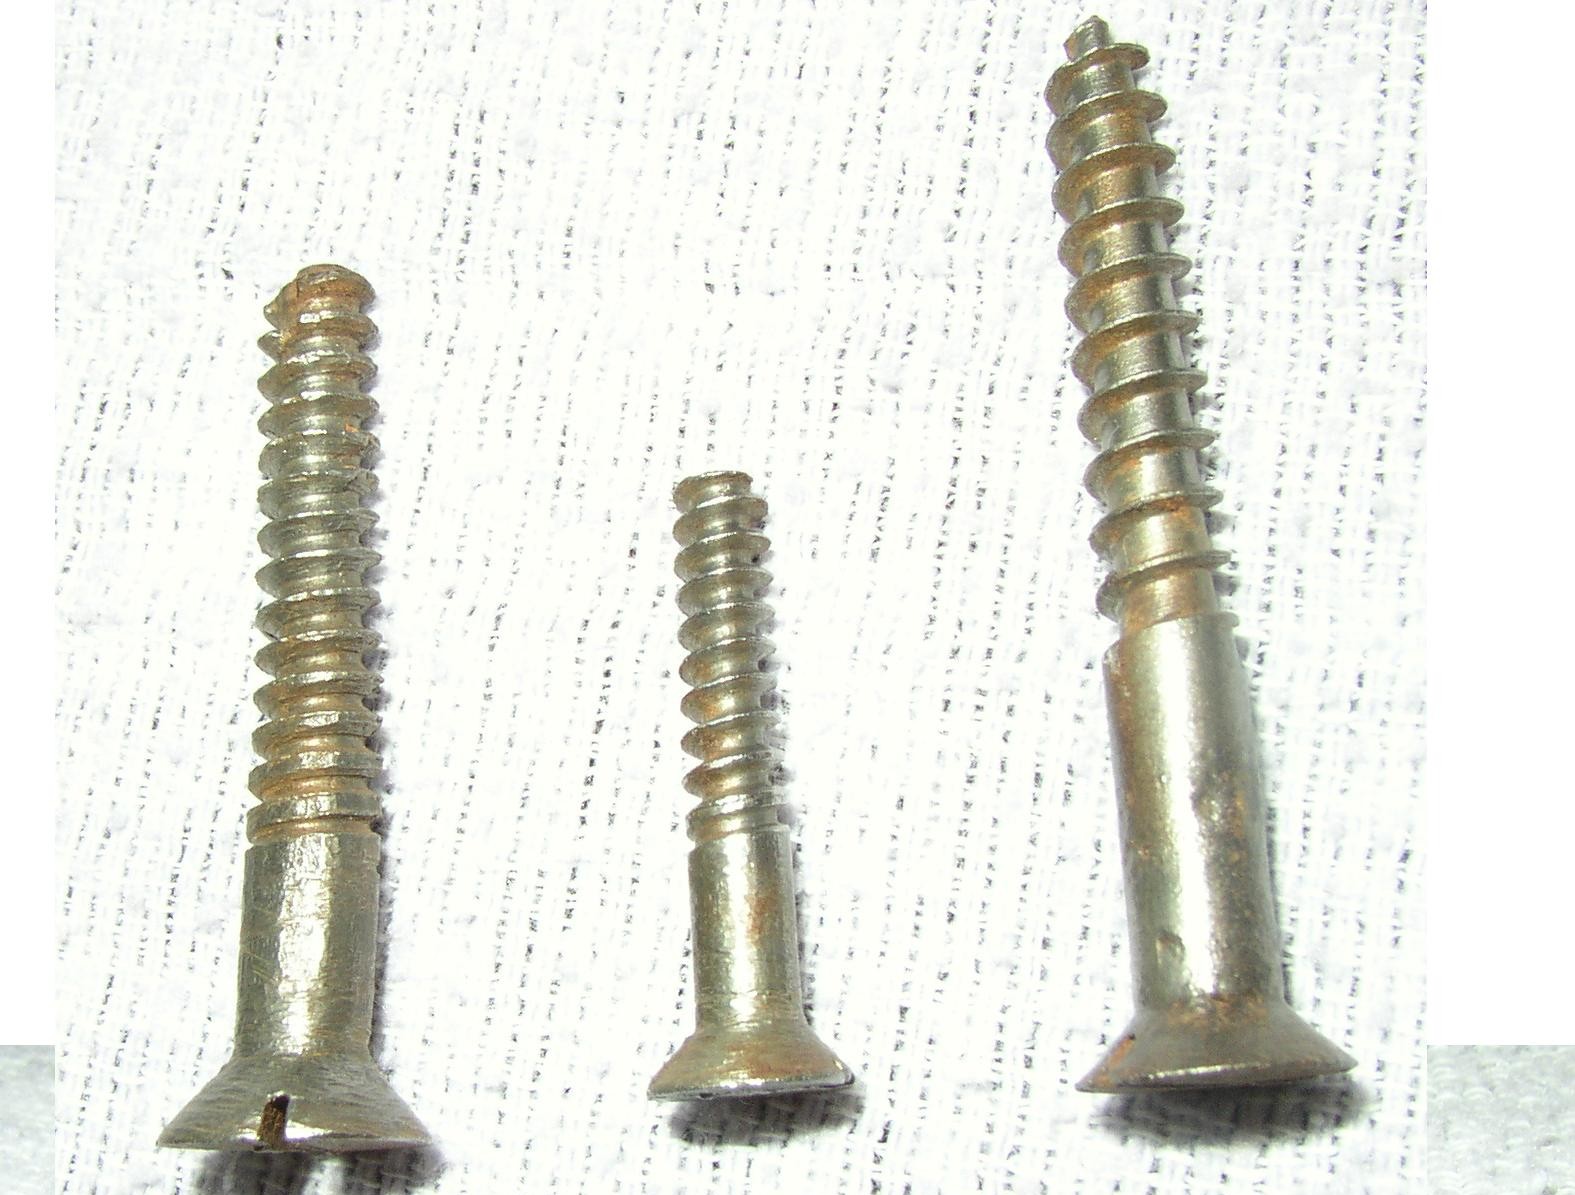 dating antique furniture screws